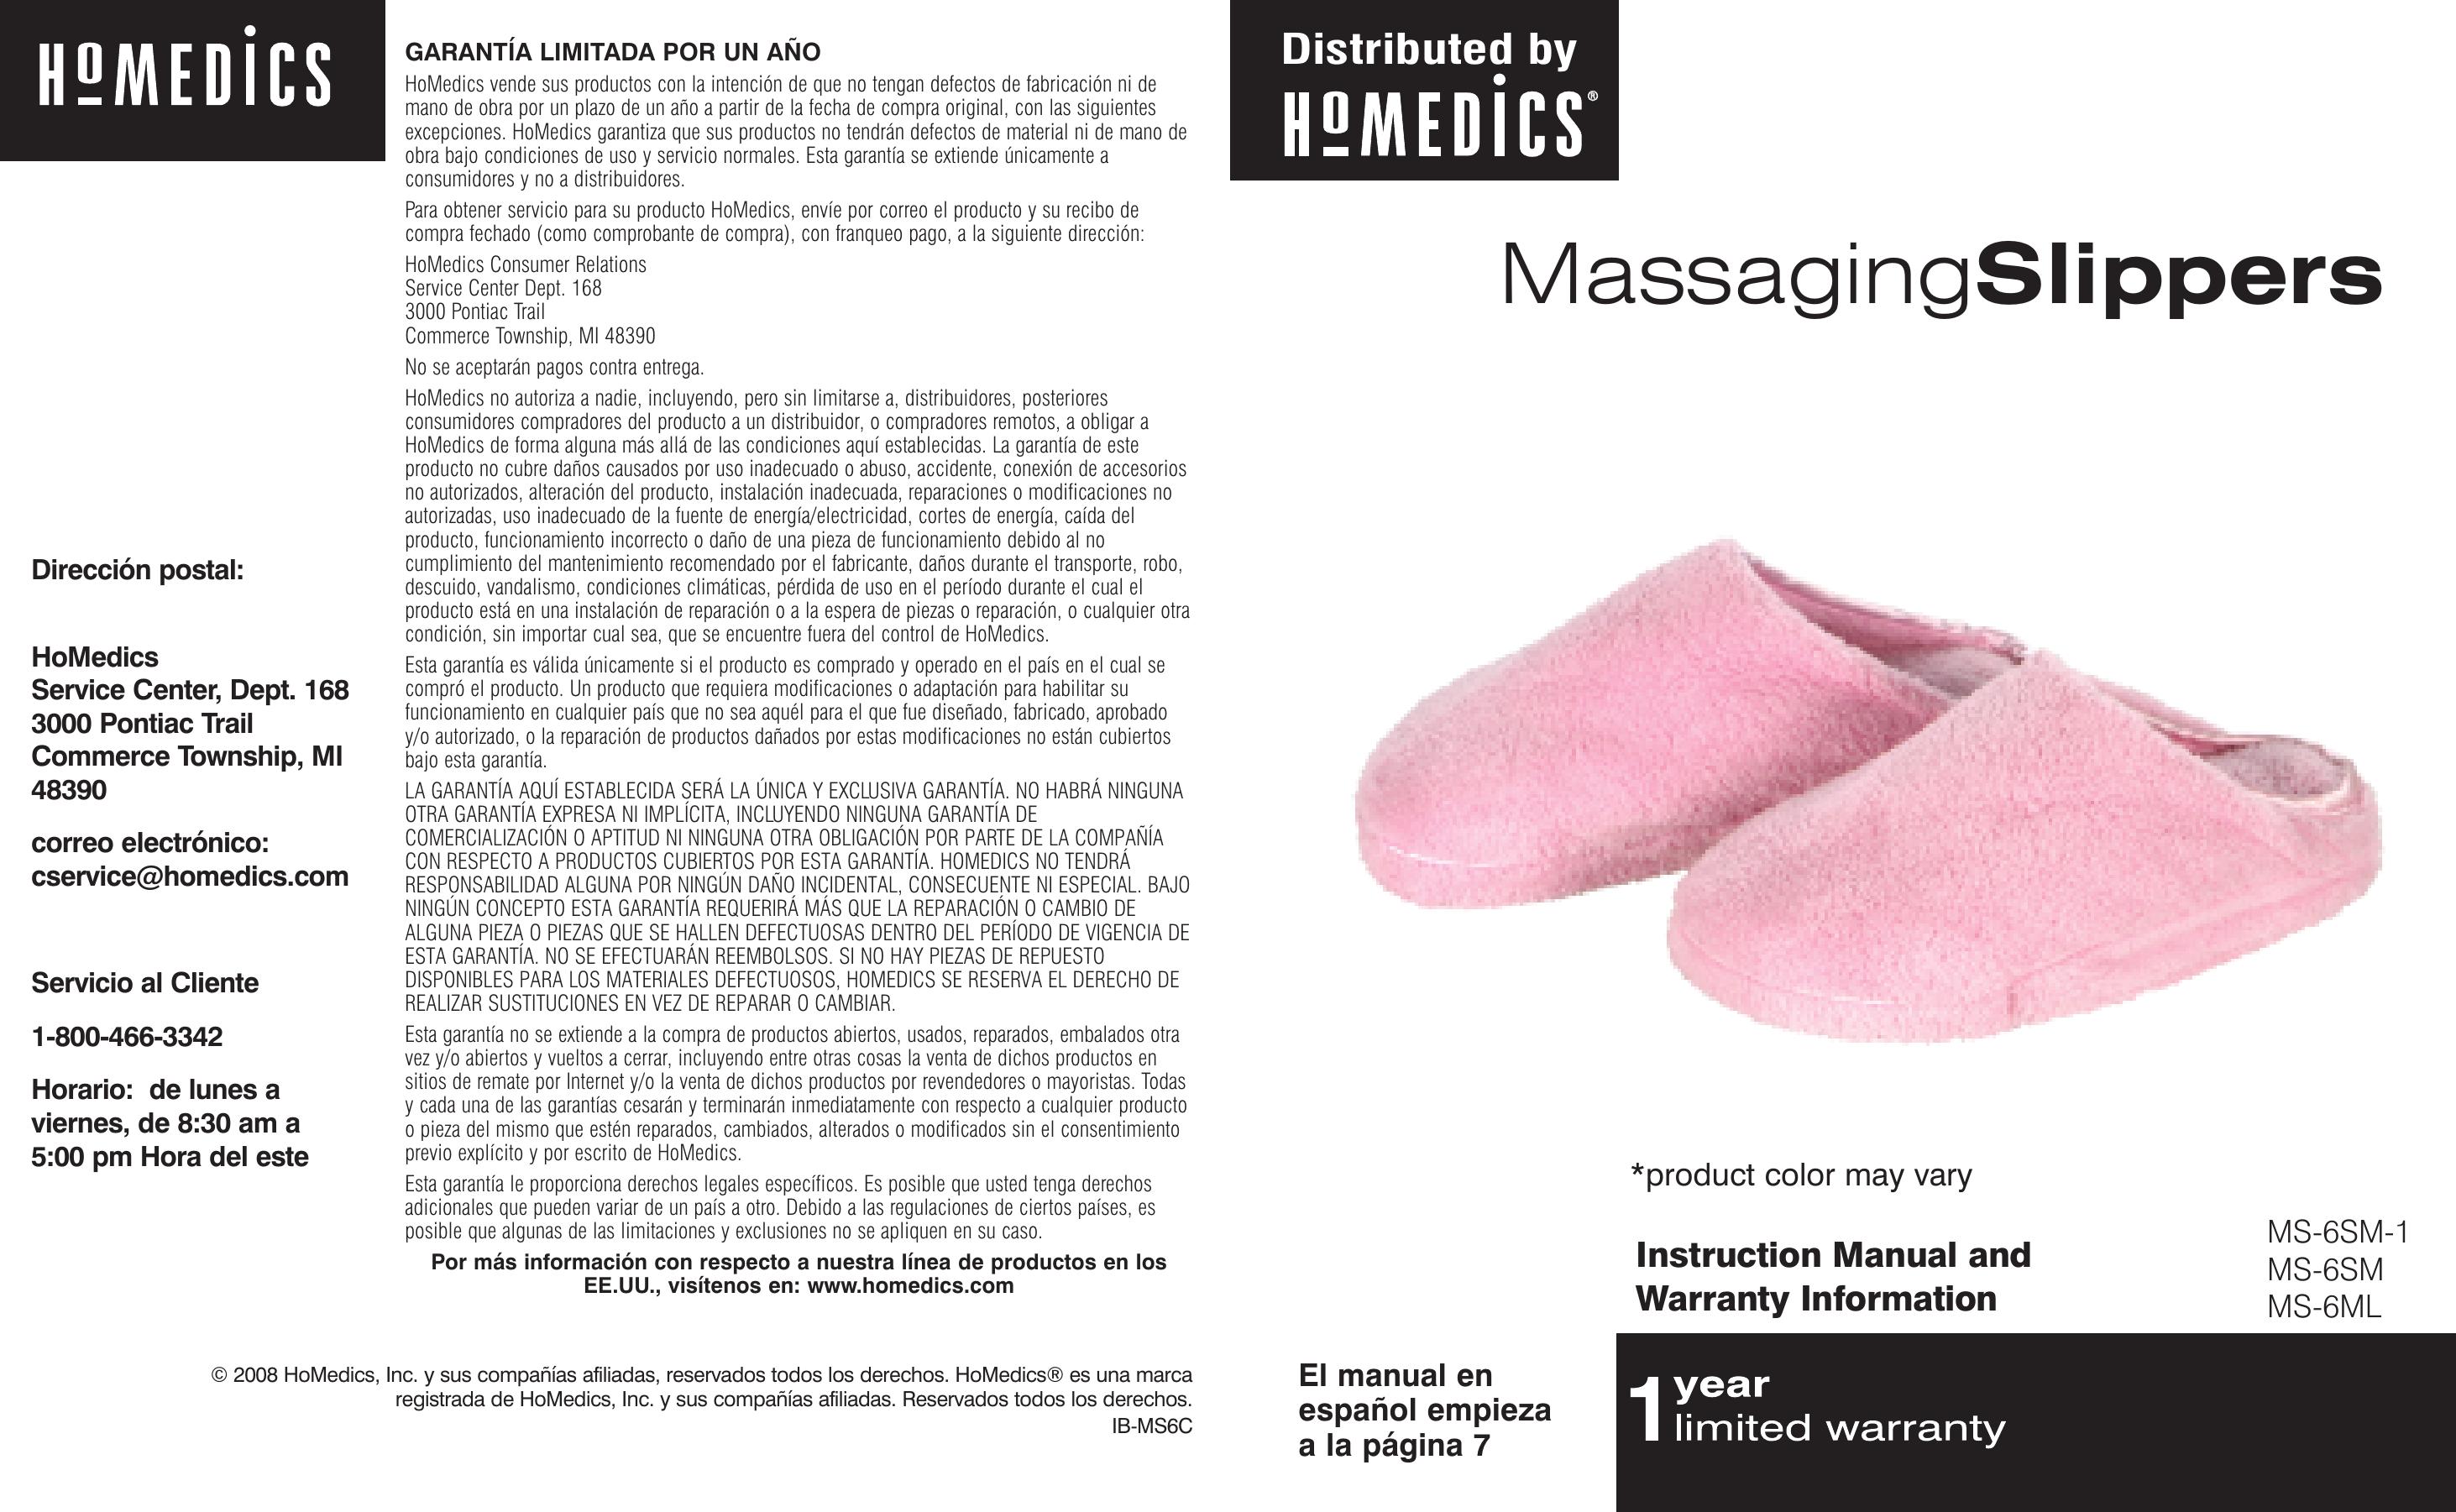 HoMedics MS-6SM-1 Pedicure Spa User Manual